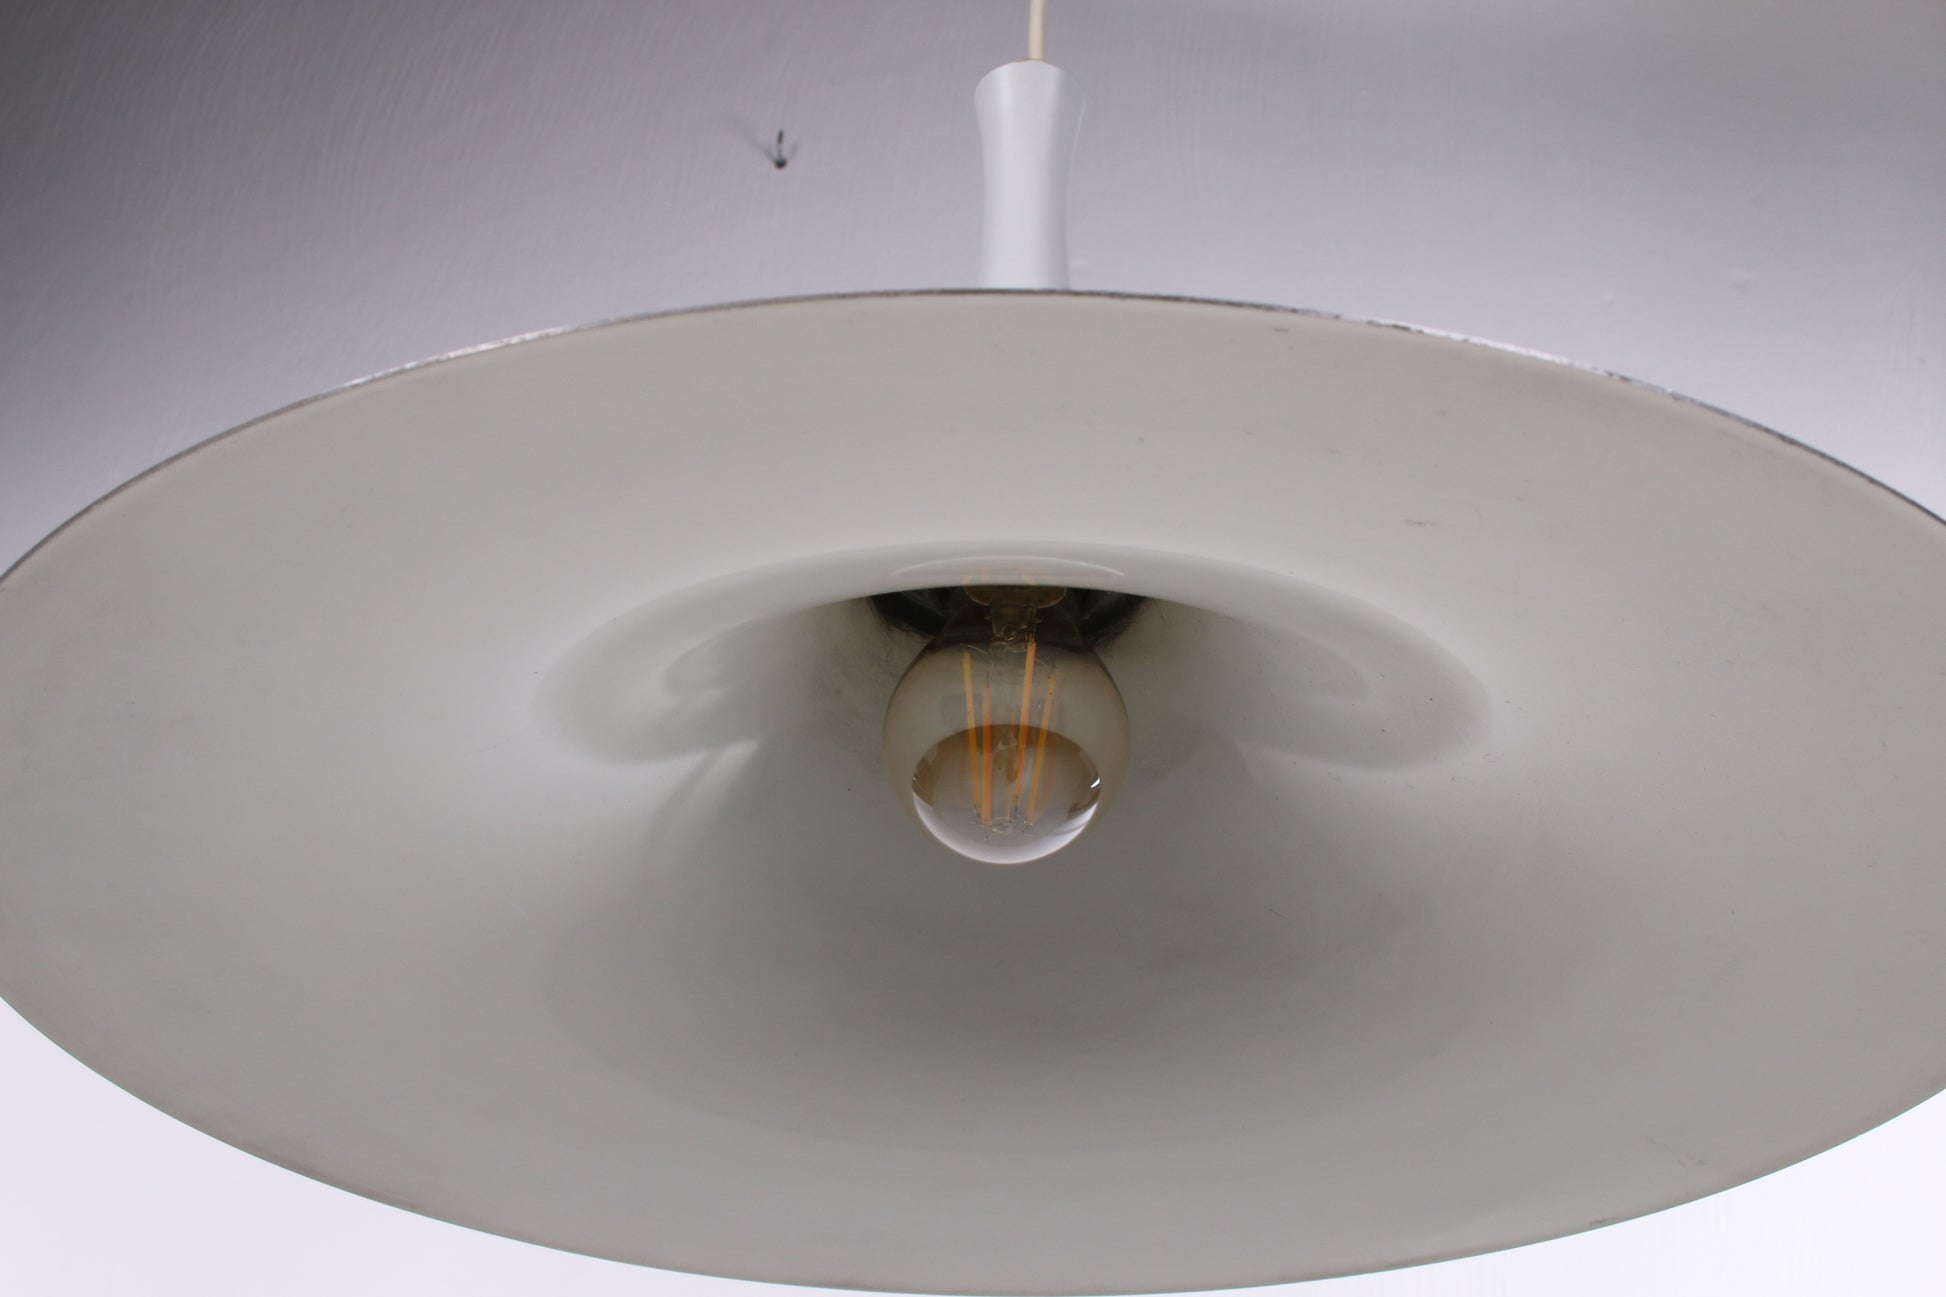 Vintage Witte Trompetlamp deens design uit de jaren 60 detail lampje onder